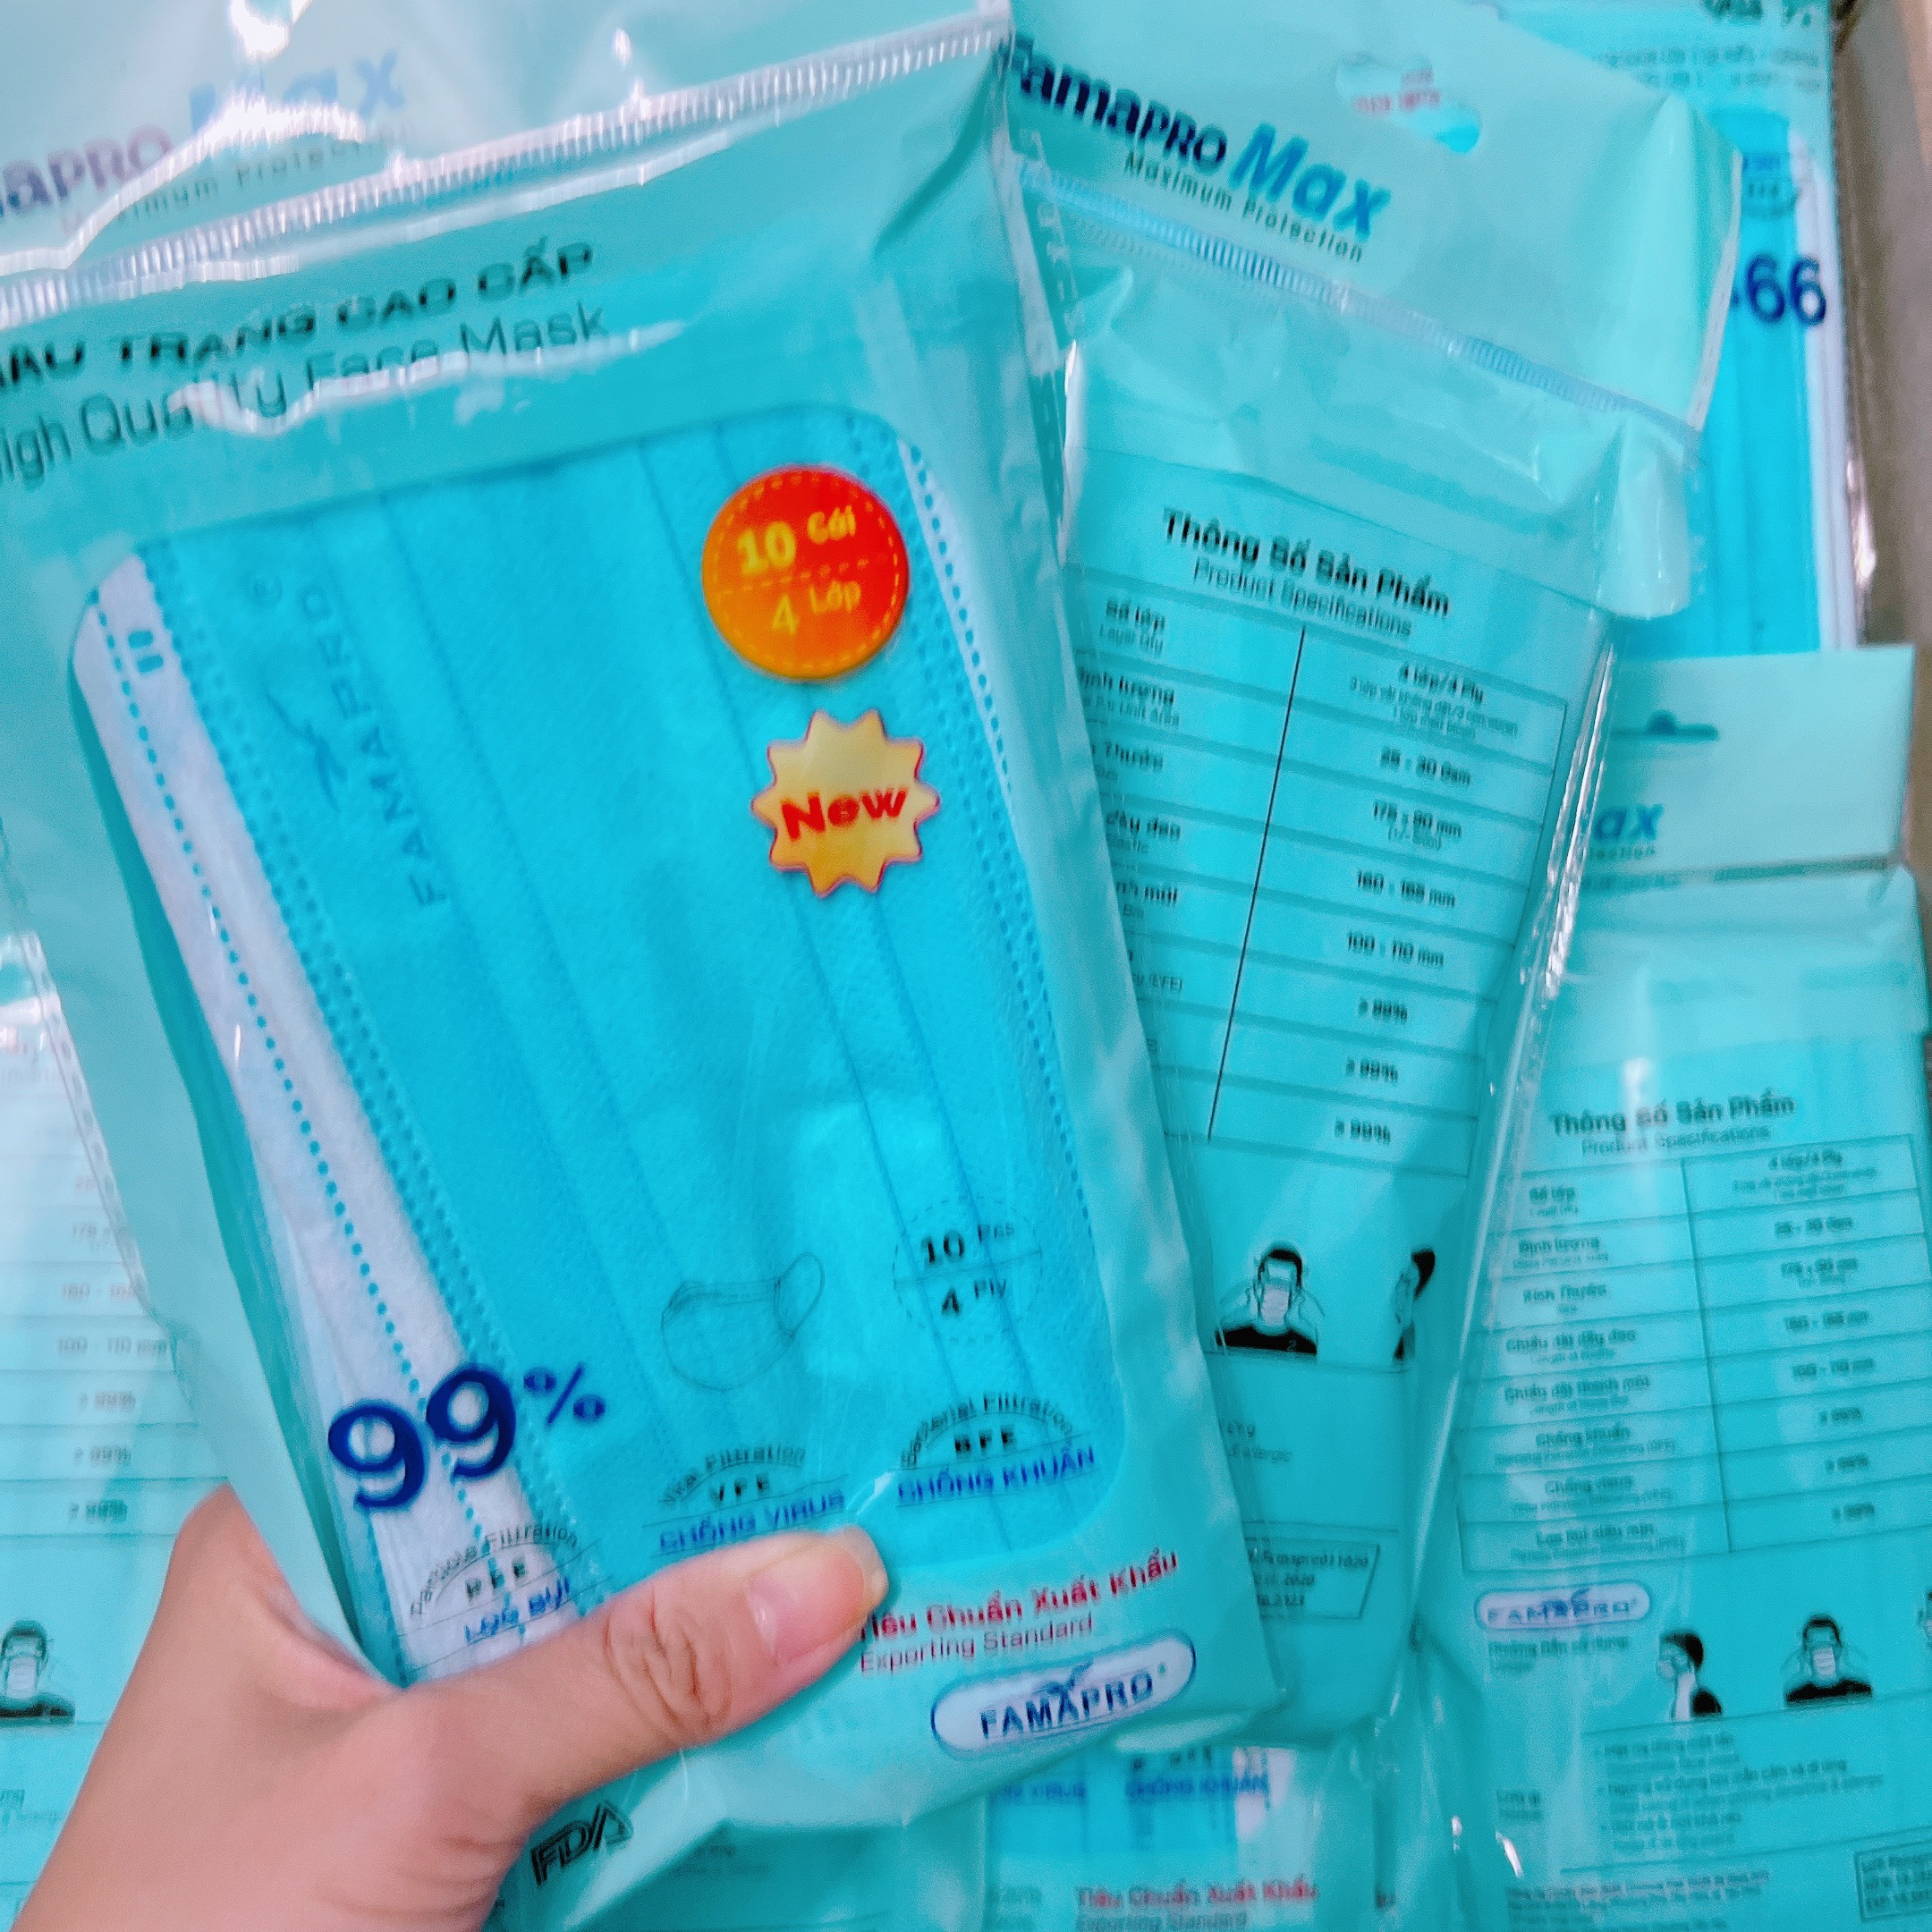 Combo 5 túi khẩu trang y tế 4 lớp kháng khuẩn cao cấp Famapro max, khẩu trang y tế xanh